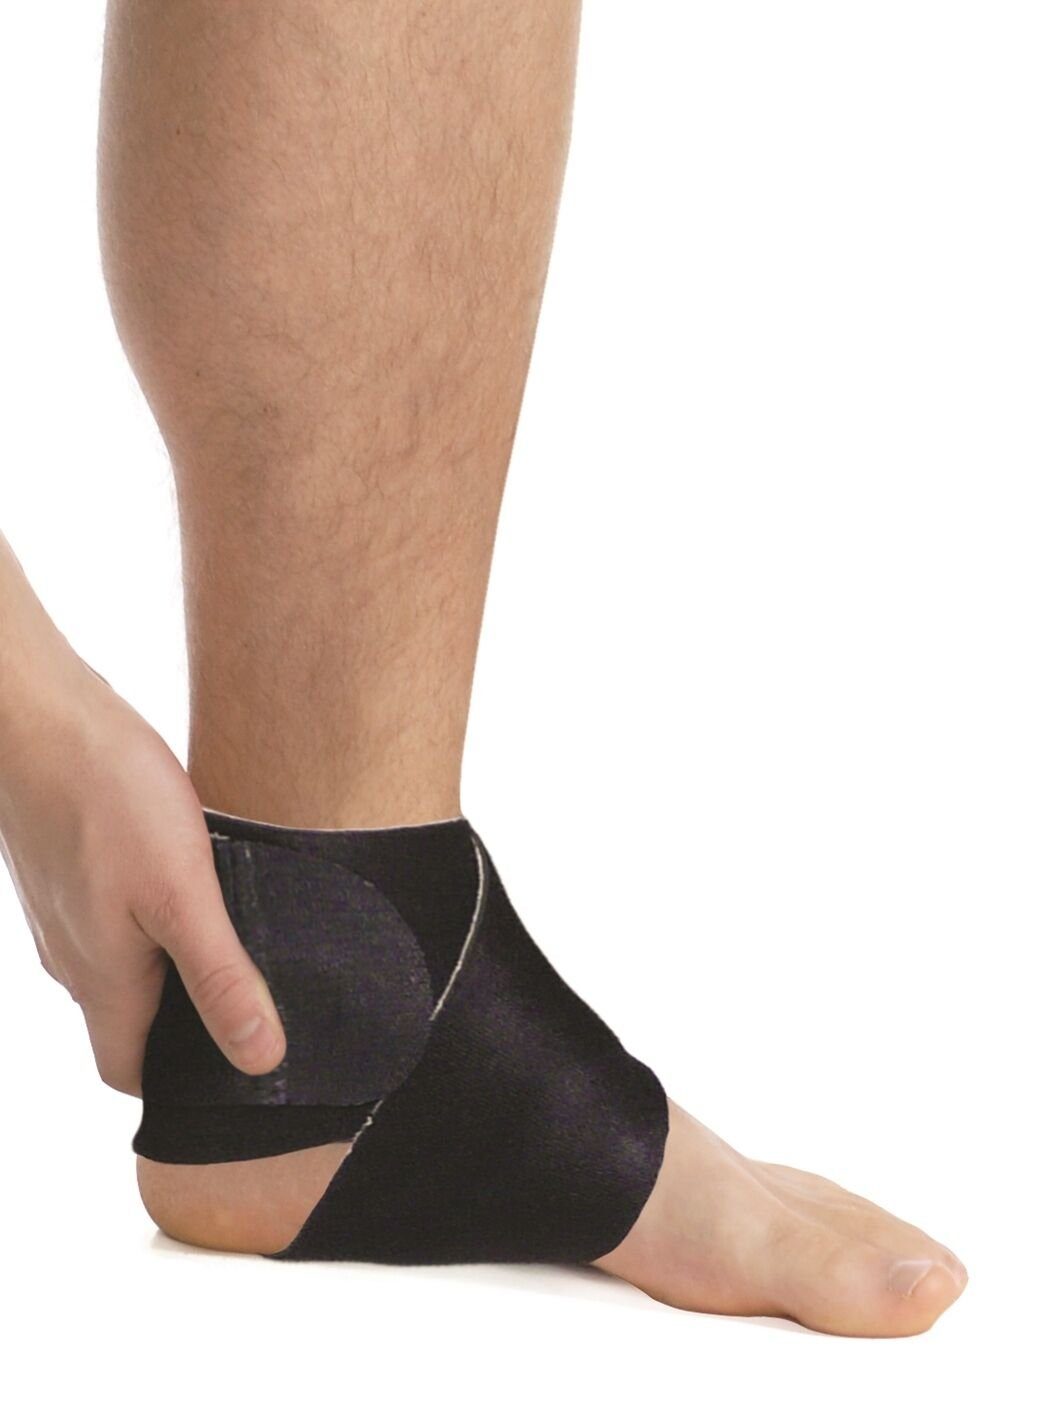 MedTex Fußbandage Regulierbare Bandage Sprunggelenk Fuß Gelenk Fixierung Neopren Aeropren 7010, Fixierung